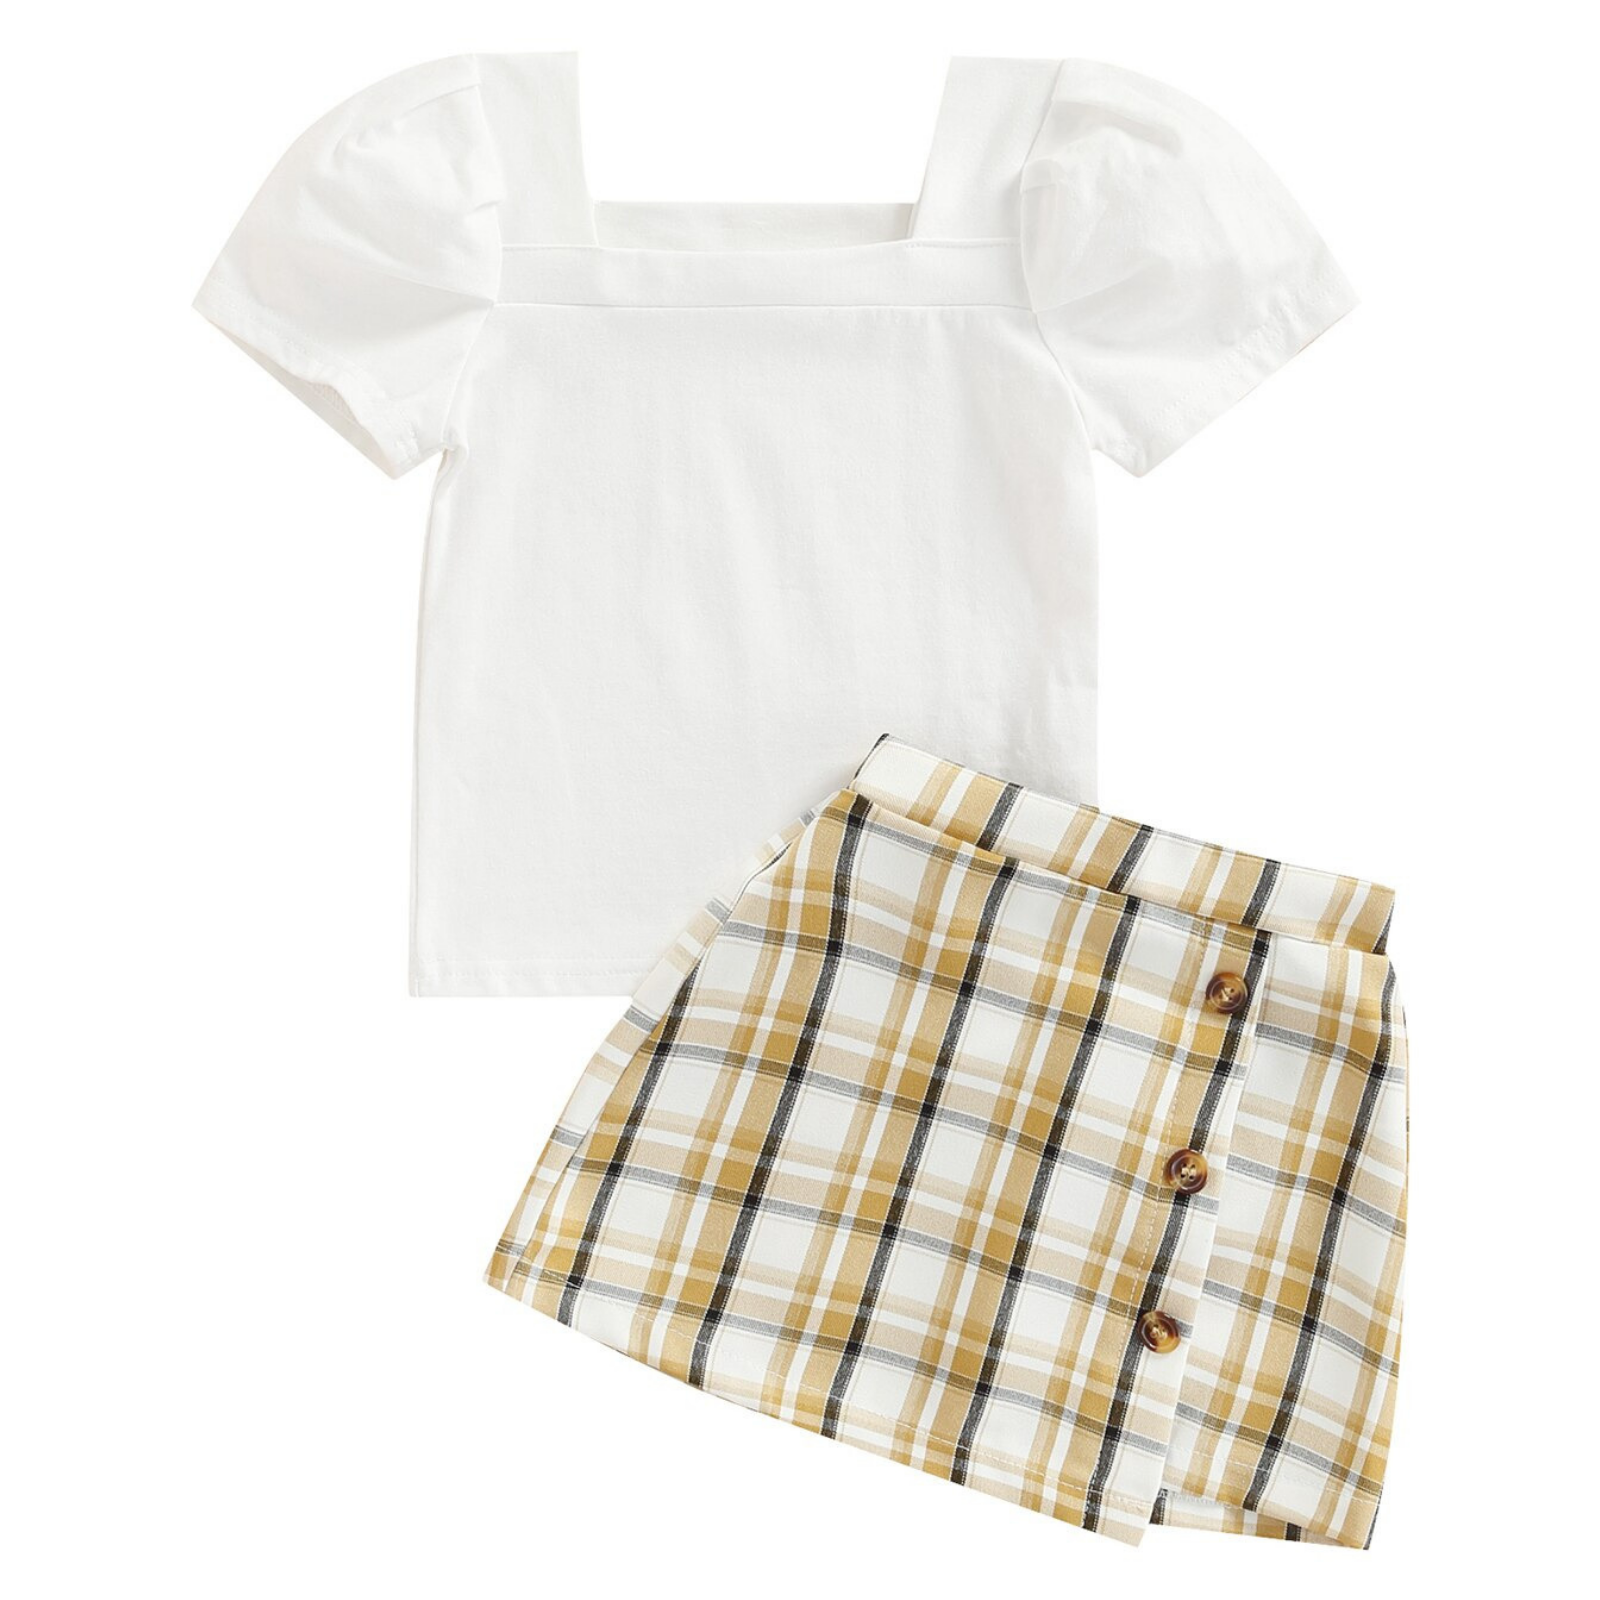 Ashira Top & Skirt Set